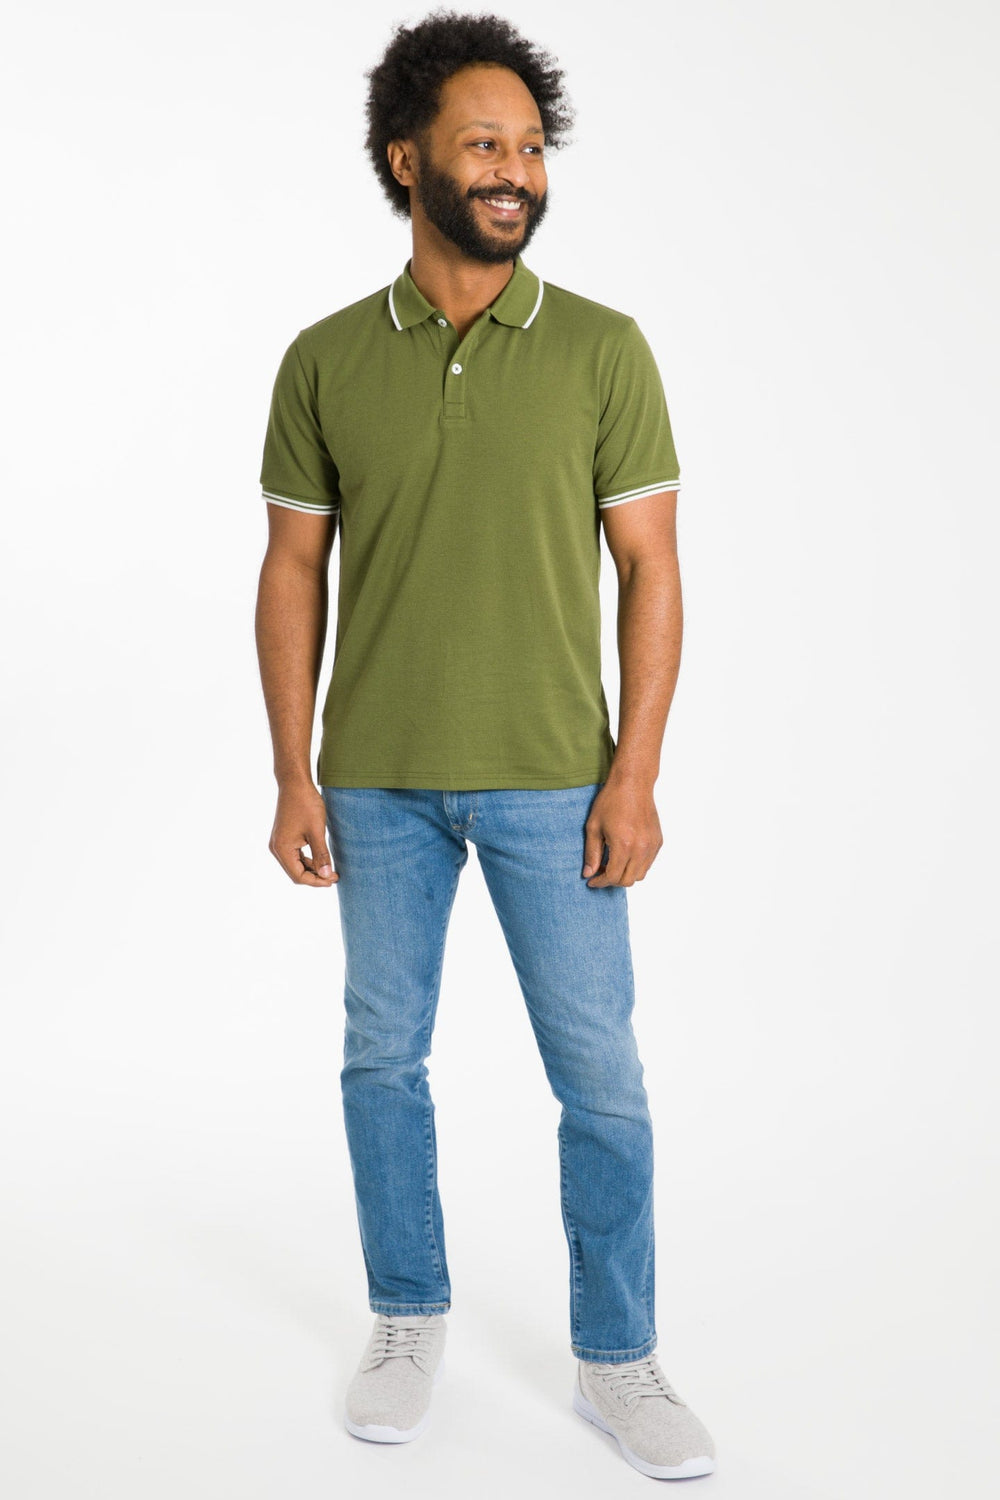 Buy Olive Micro Pique Polo Shirt for Short Men | Ash & Erie   Short Sleeve Polo Shirt